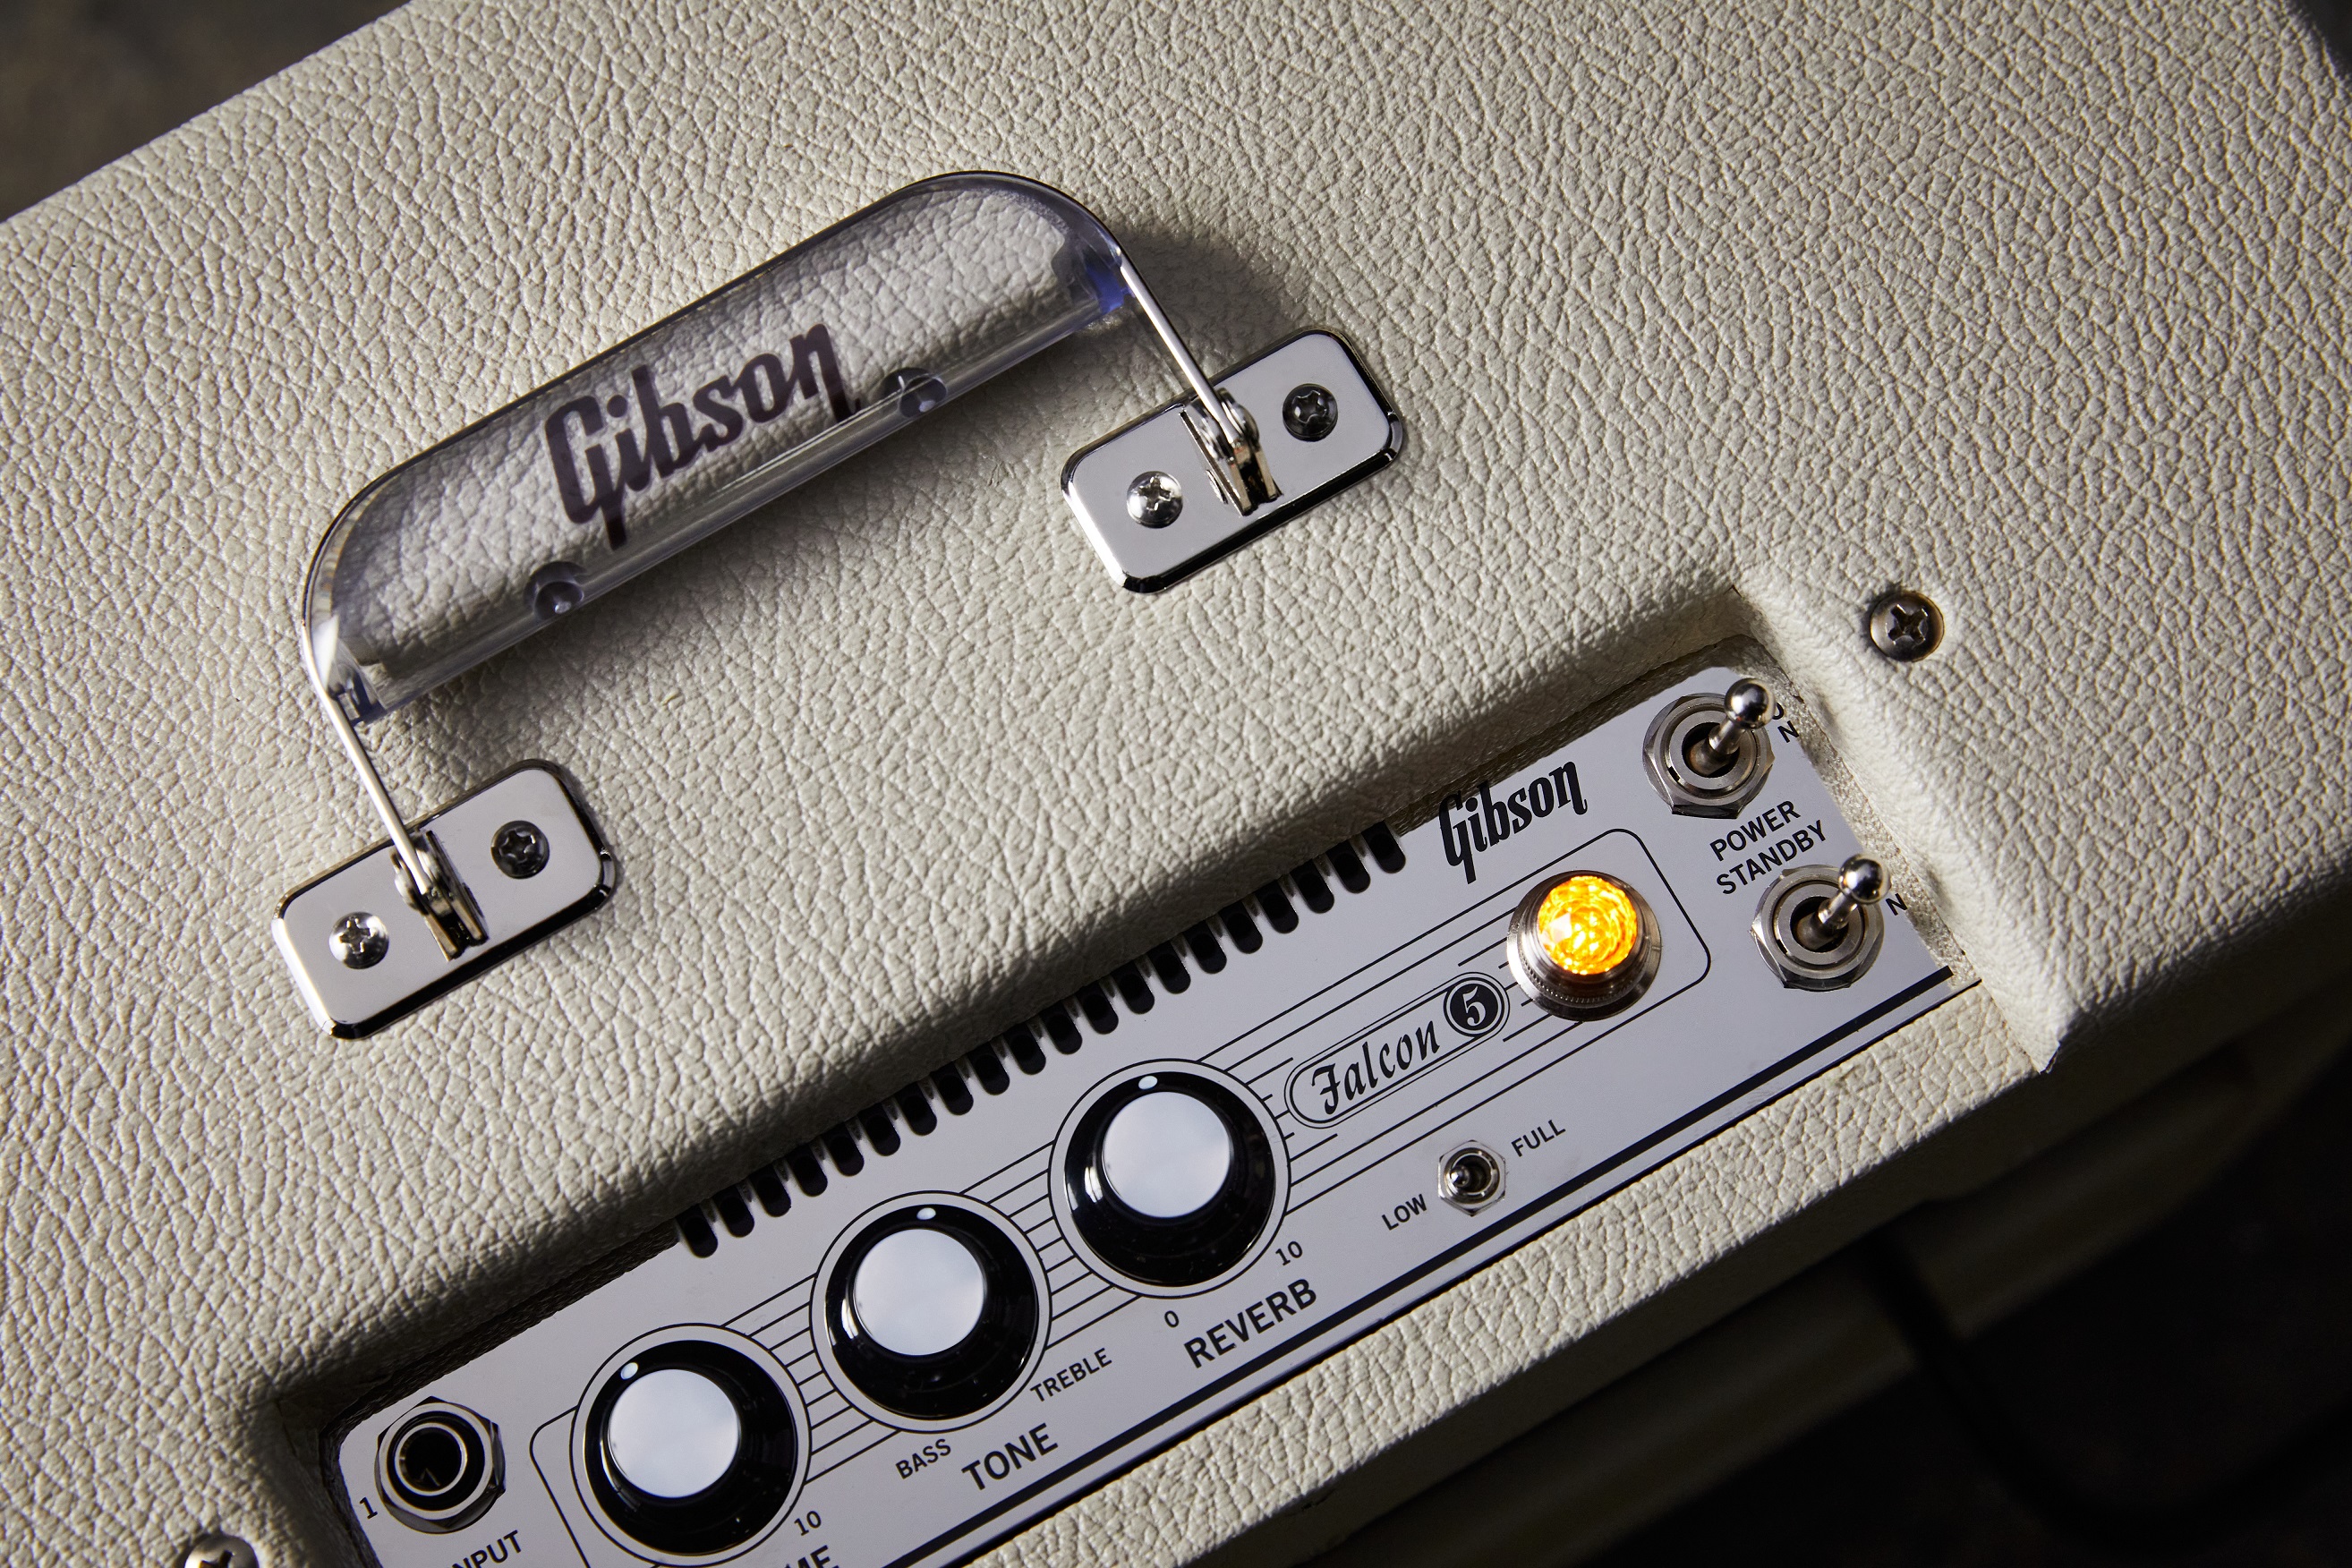 Gibson Falcon 5 Combo 8w 1x10 - Combo amplificador para guitarra eléctrica - Variation 4